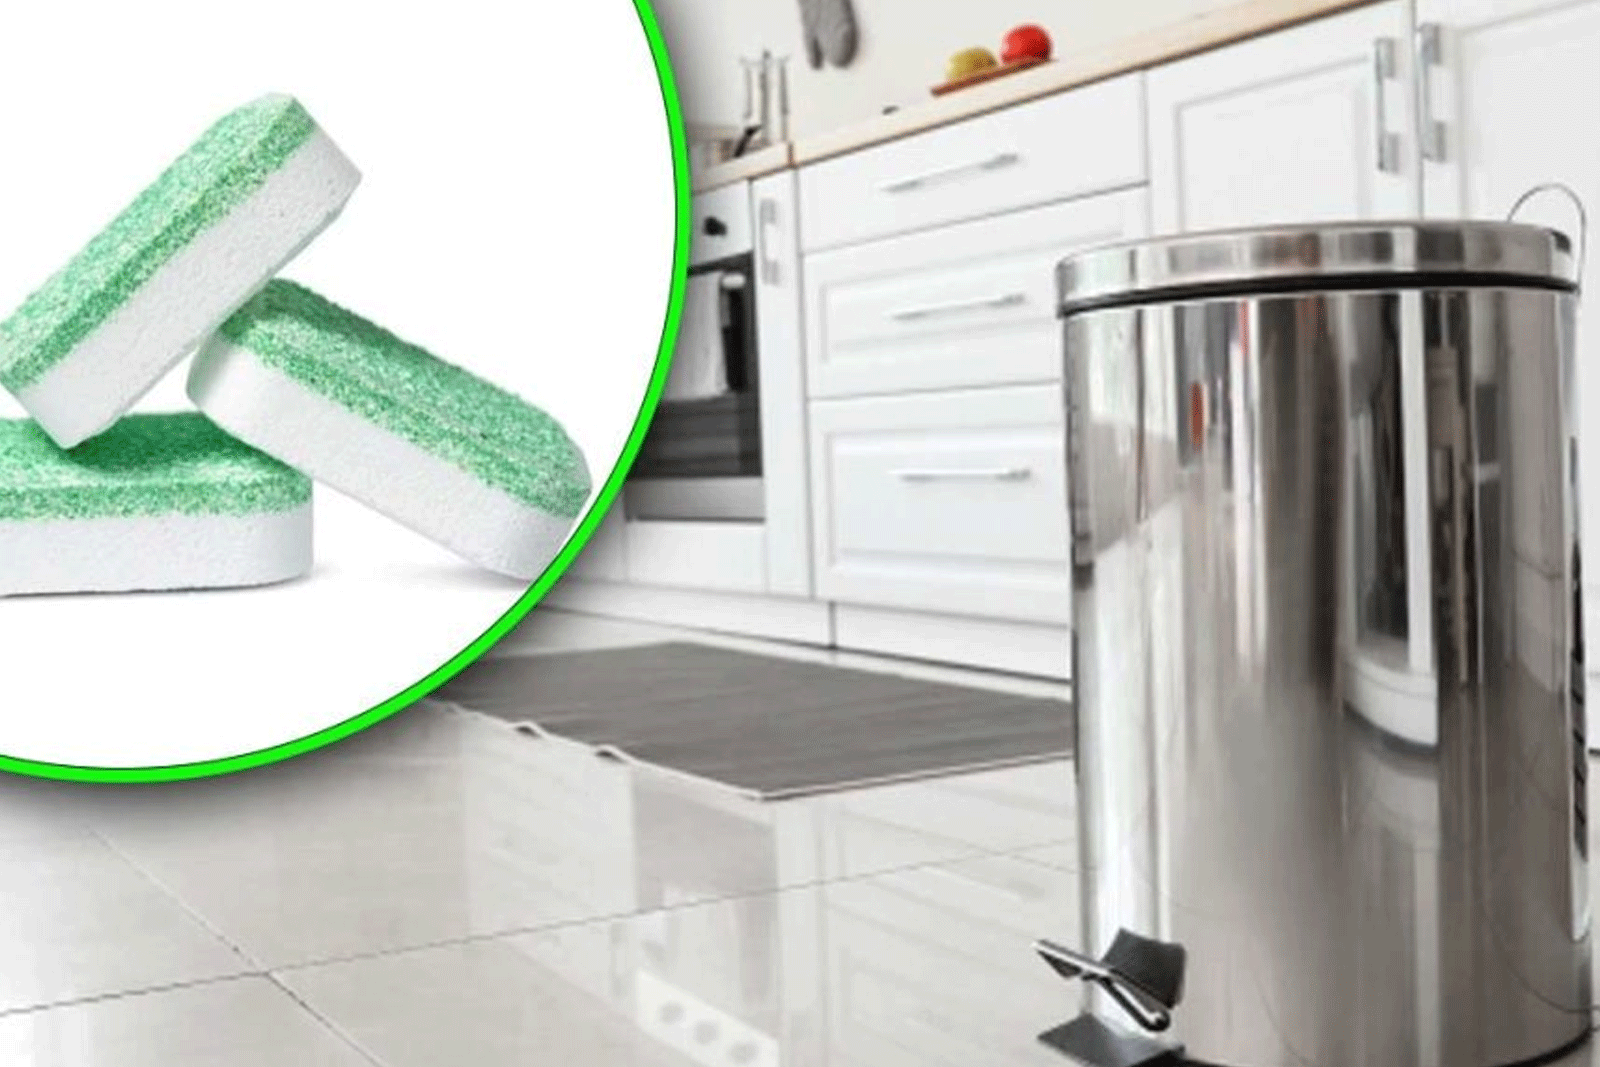 Η Ταμπλέτα Πλυντηρίου Πιάτων Μπορεί να Καθαρίσει Εξαιρετικά τον Κάδο των Σκουπιδιών